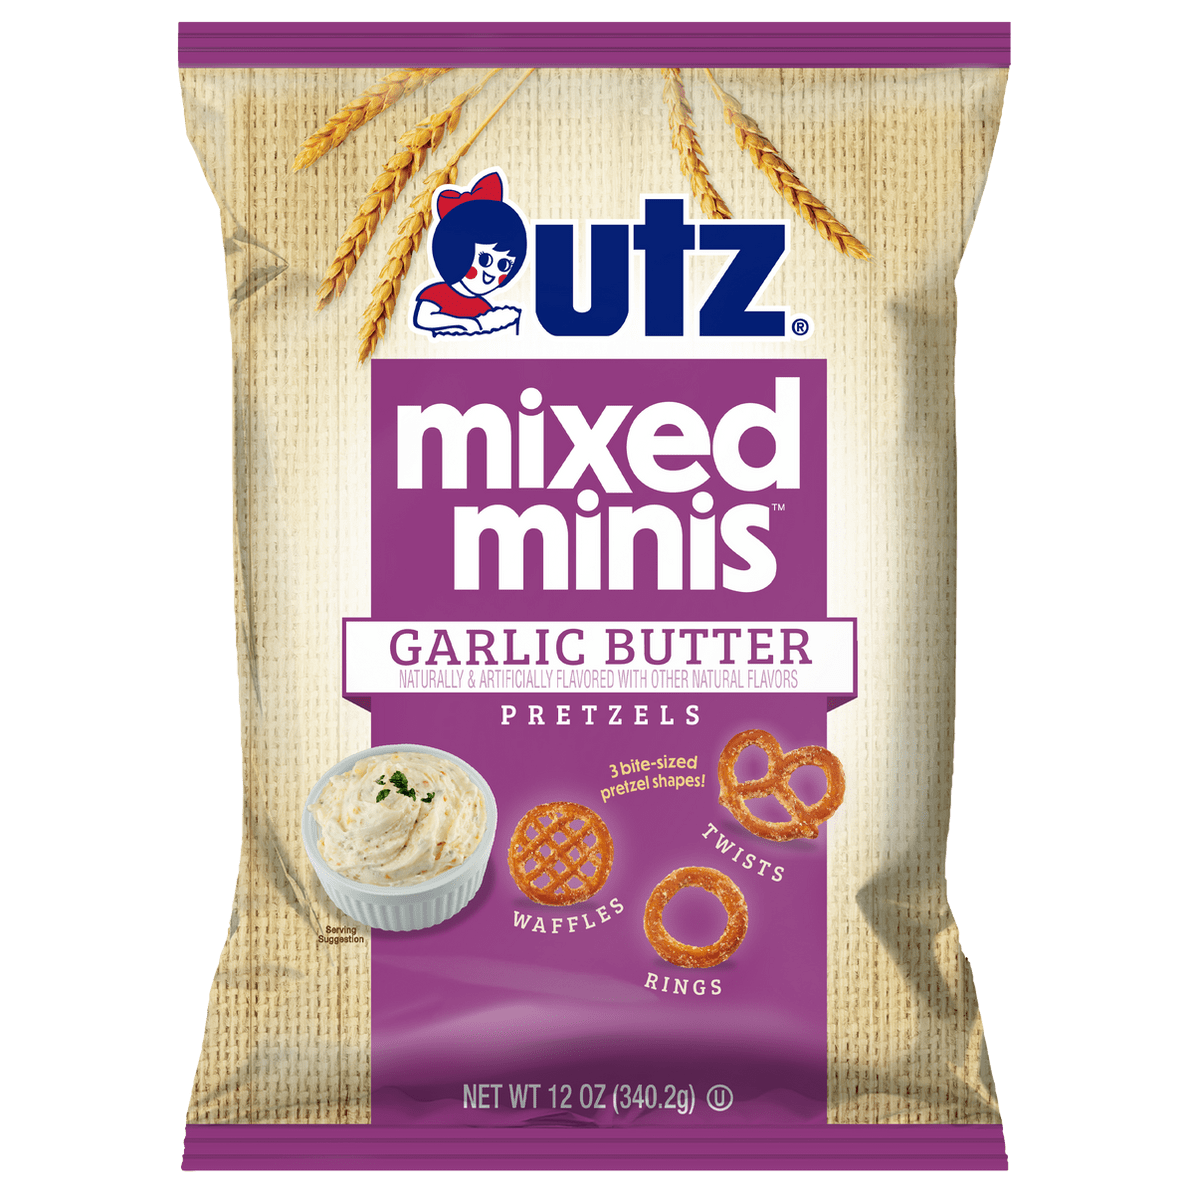 0-41780-35317-7_Utz_12oz_Mixed_Minis_Garlic_Butter_Pretzels_Bag_front_1194x.png